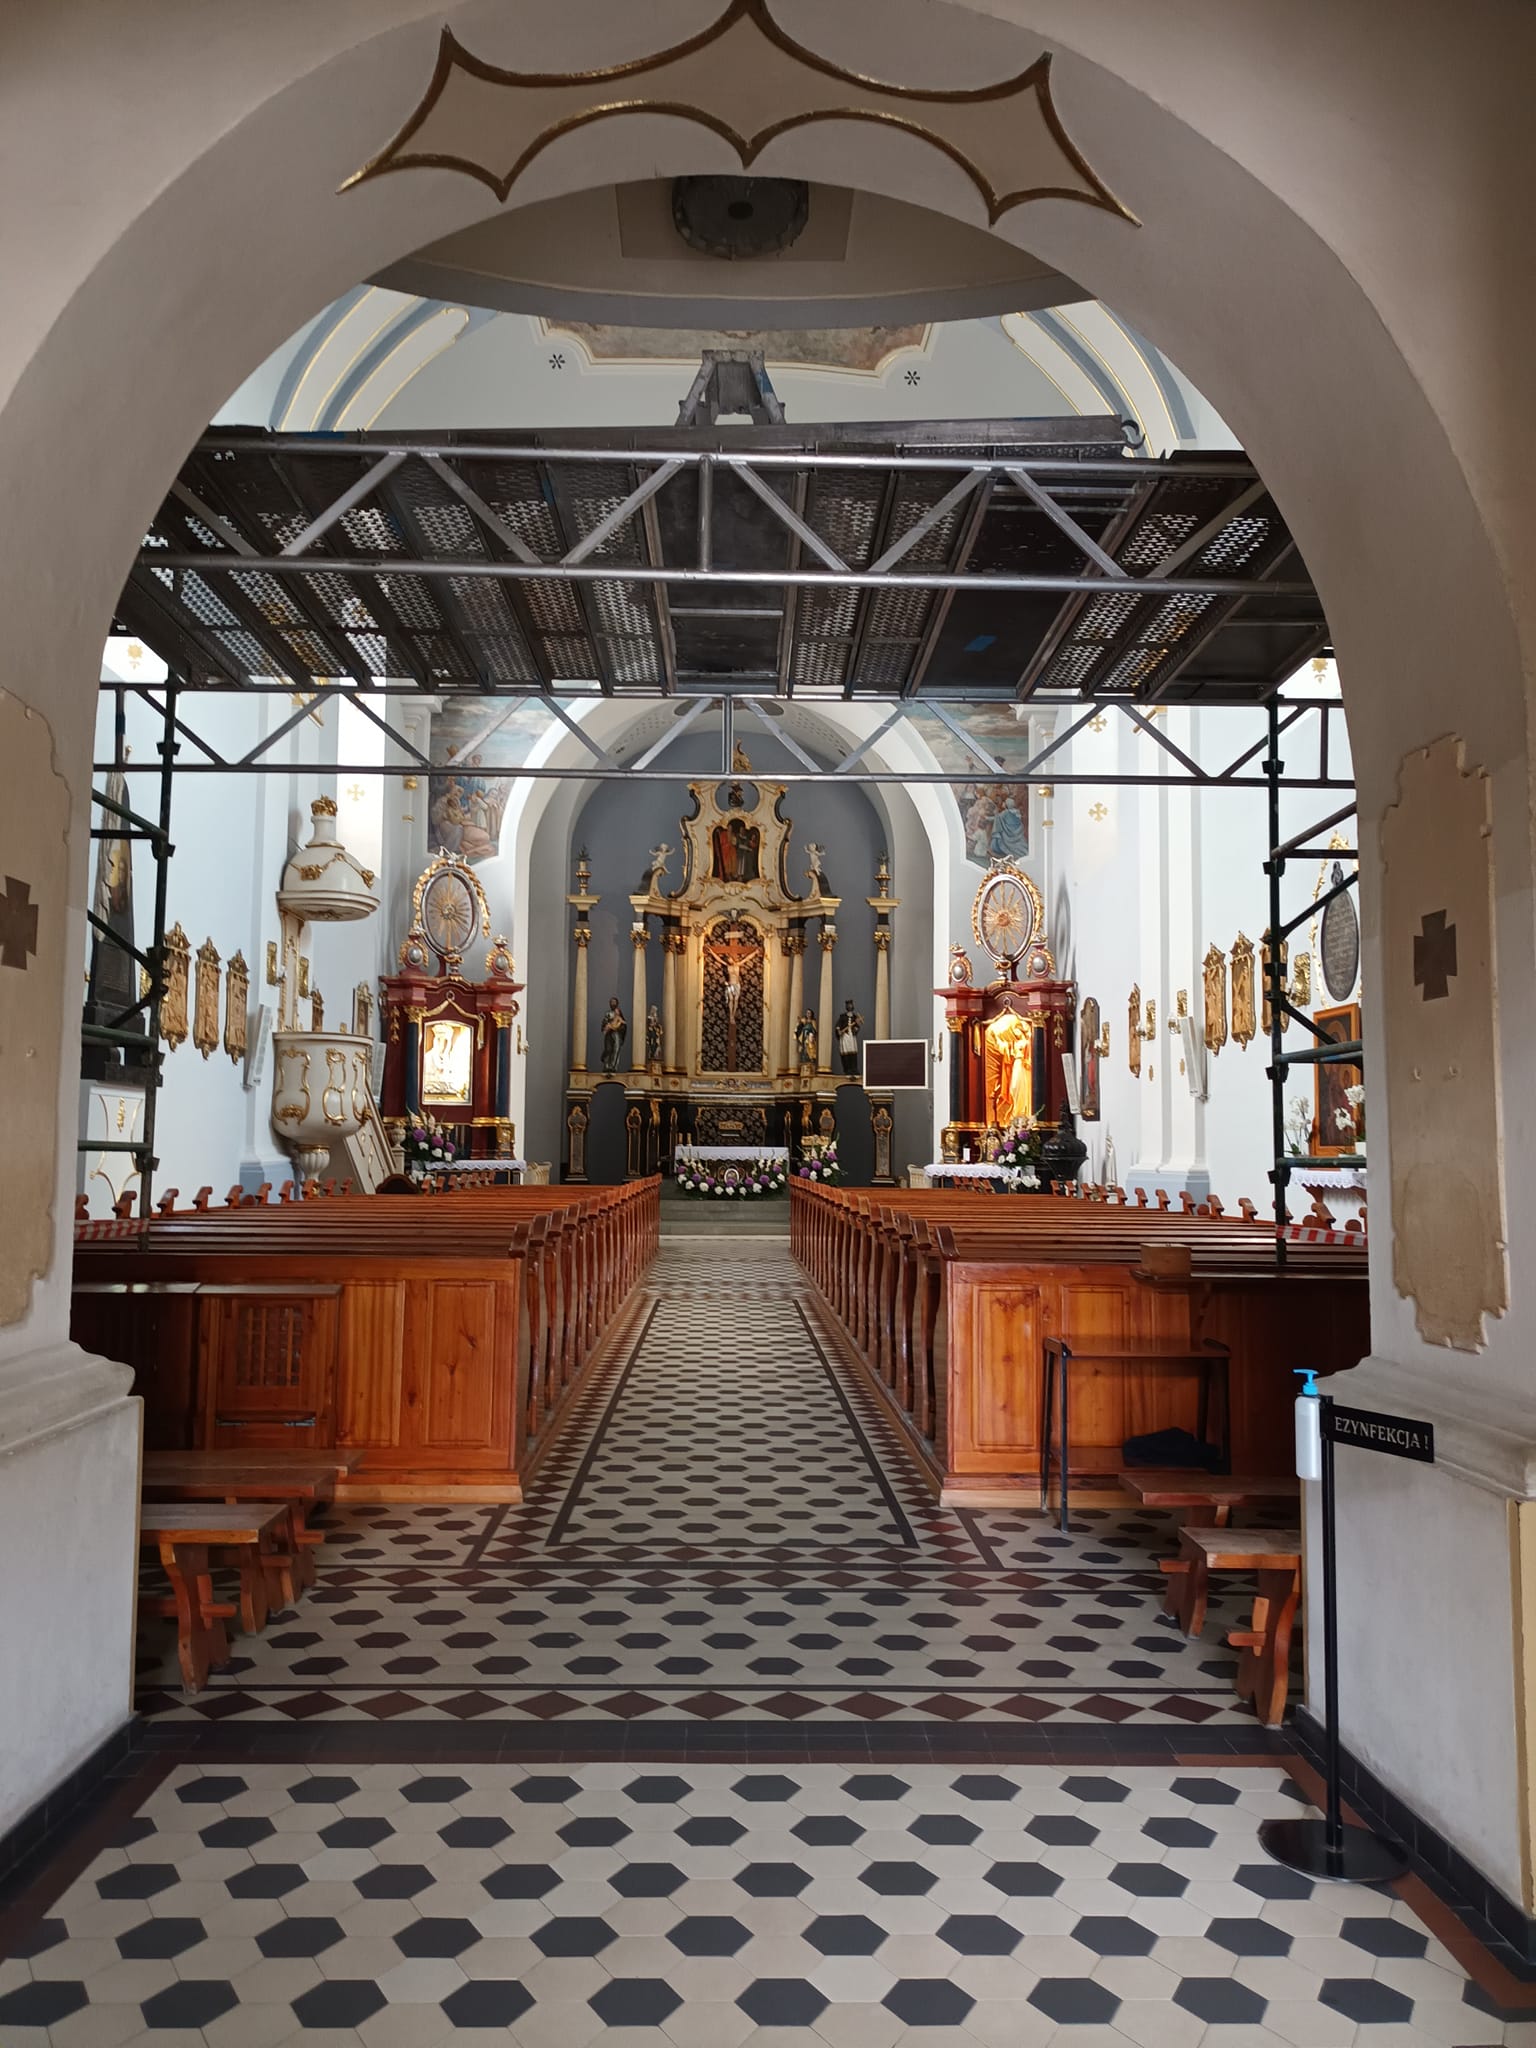 Rozpoczął się remont elewacji 300 letniego zabytkowego kościoła katolickiego w Więcborku wybudowanego przez ród książąt i hrabiów Potulickich h. Grzymała z Więcborka mających tu swoją siedzibę zamkową